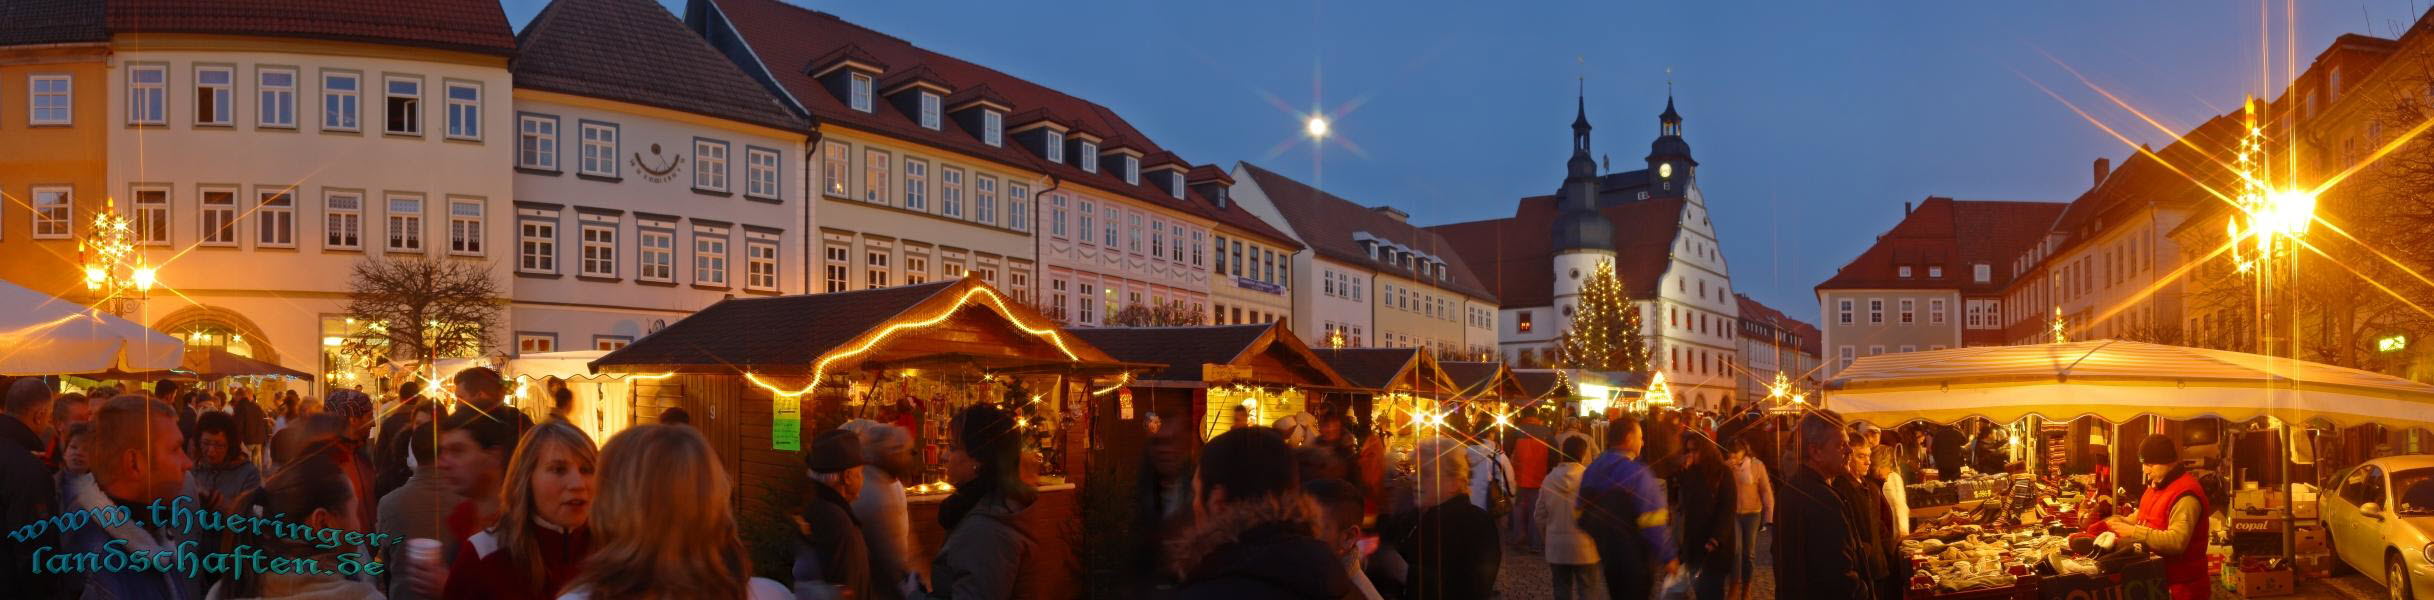 Weihnachtsmarkt Hildburghausen